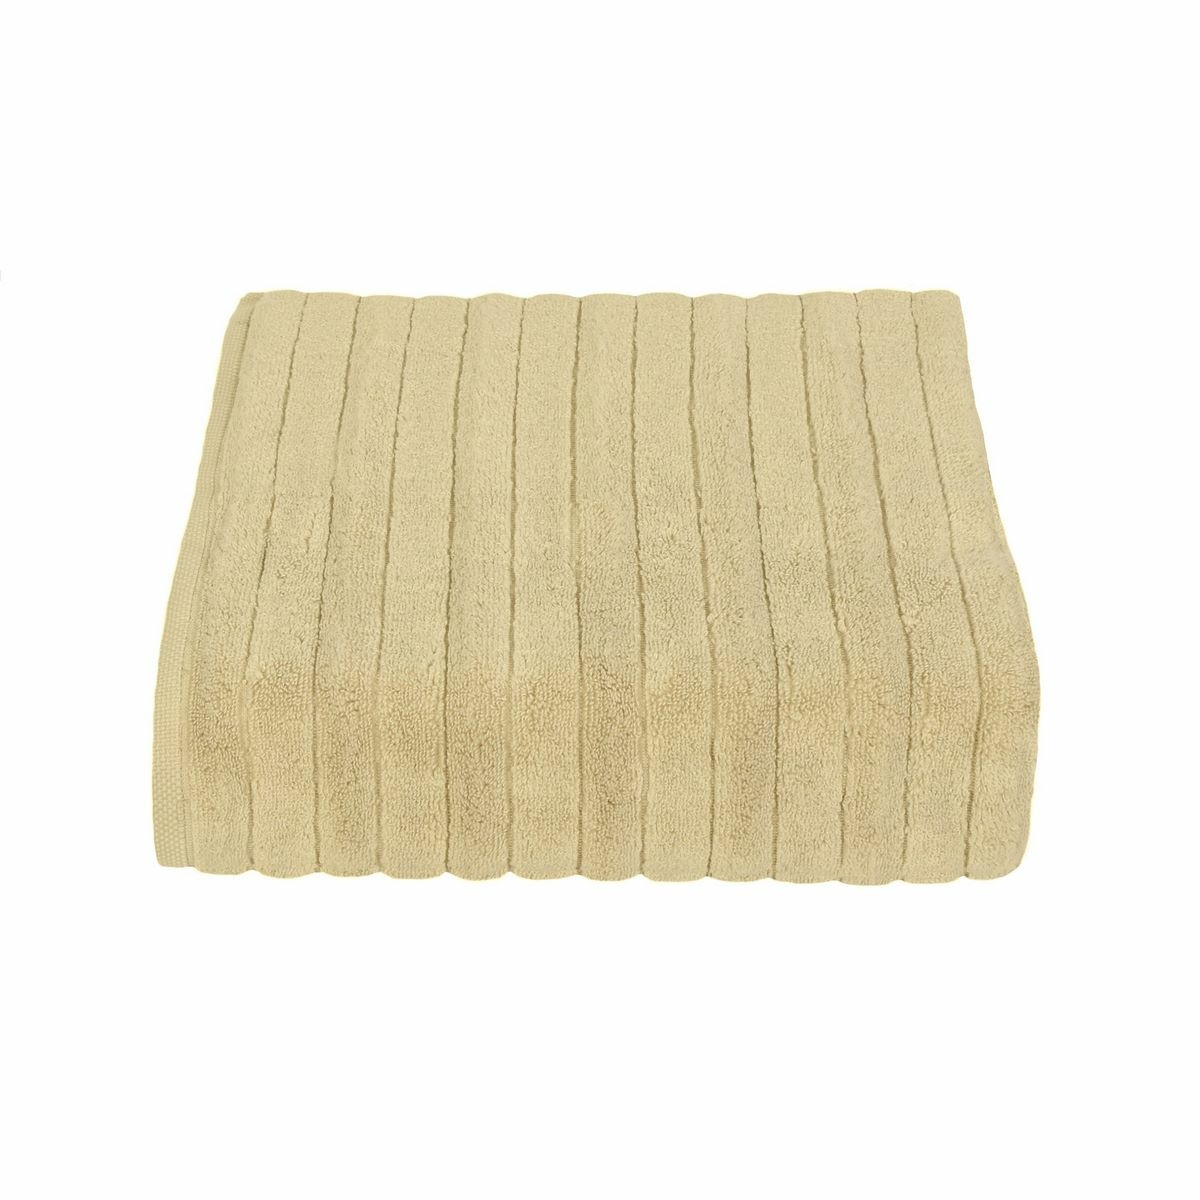 Ręcznik mikrobawełna DELUXE beżowy, 50 x 95 cm, 50 x 95 cm